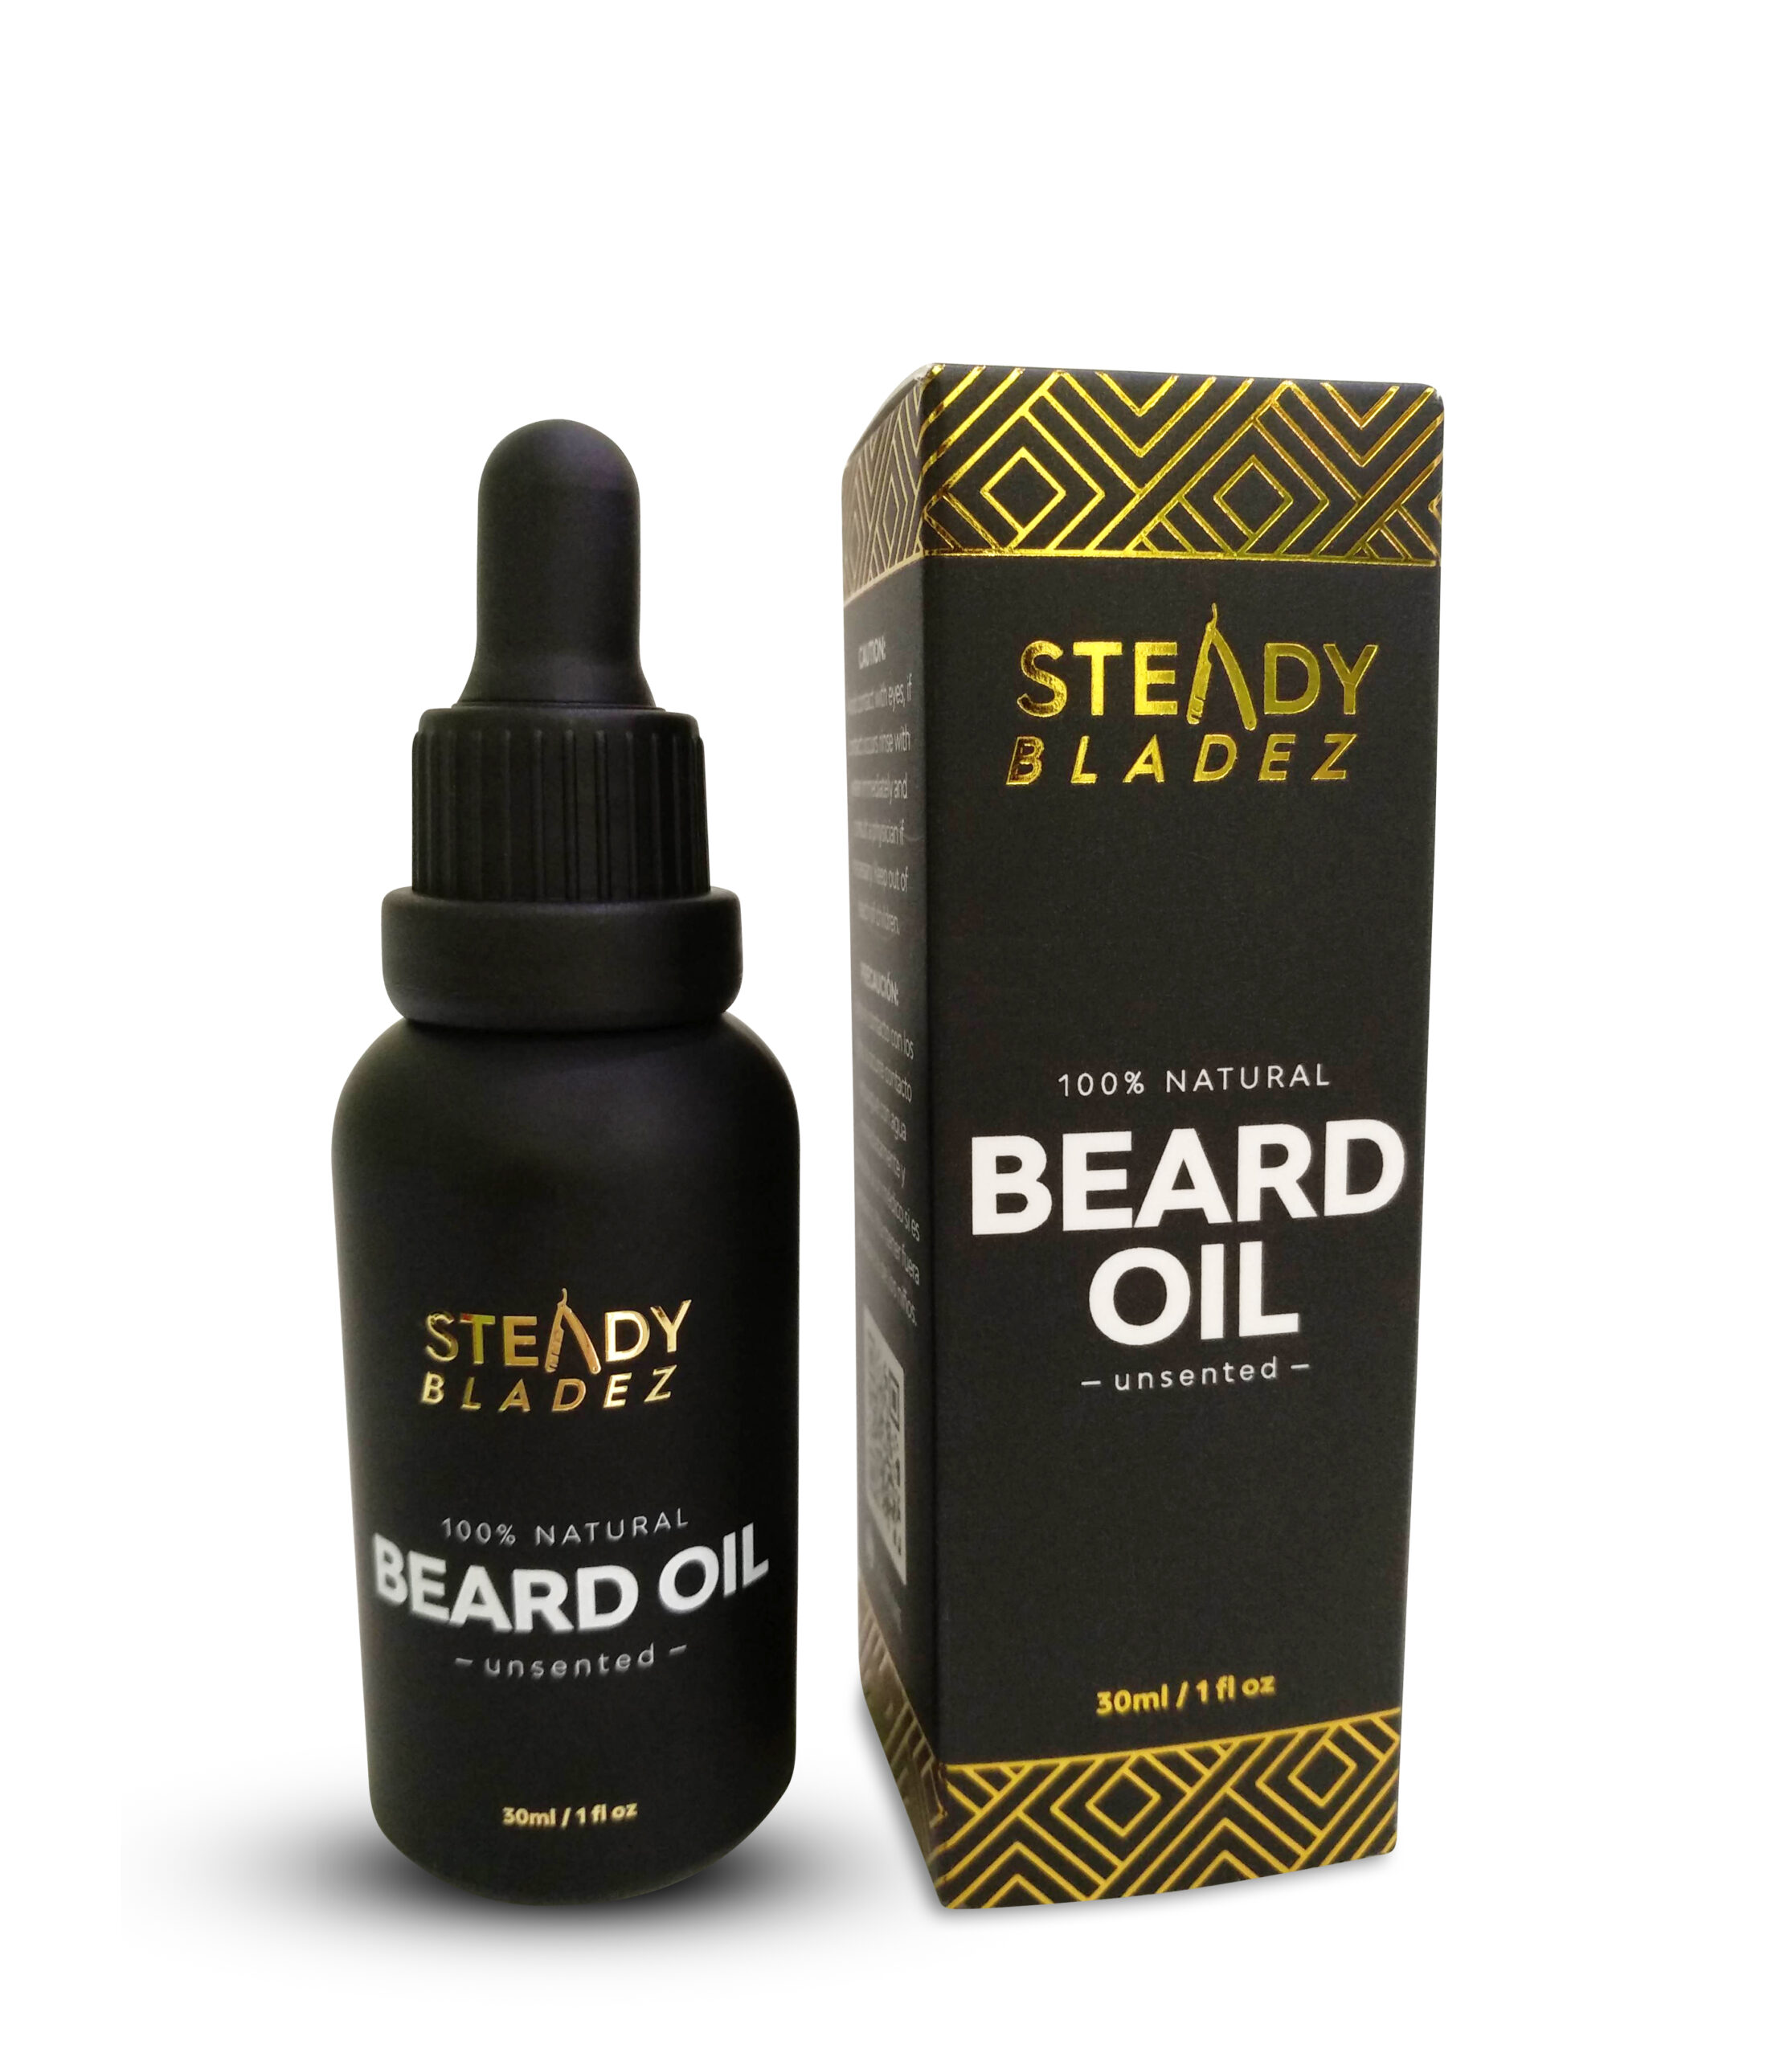 Steady Bladez – Beard Oil